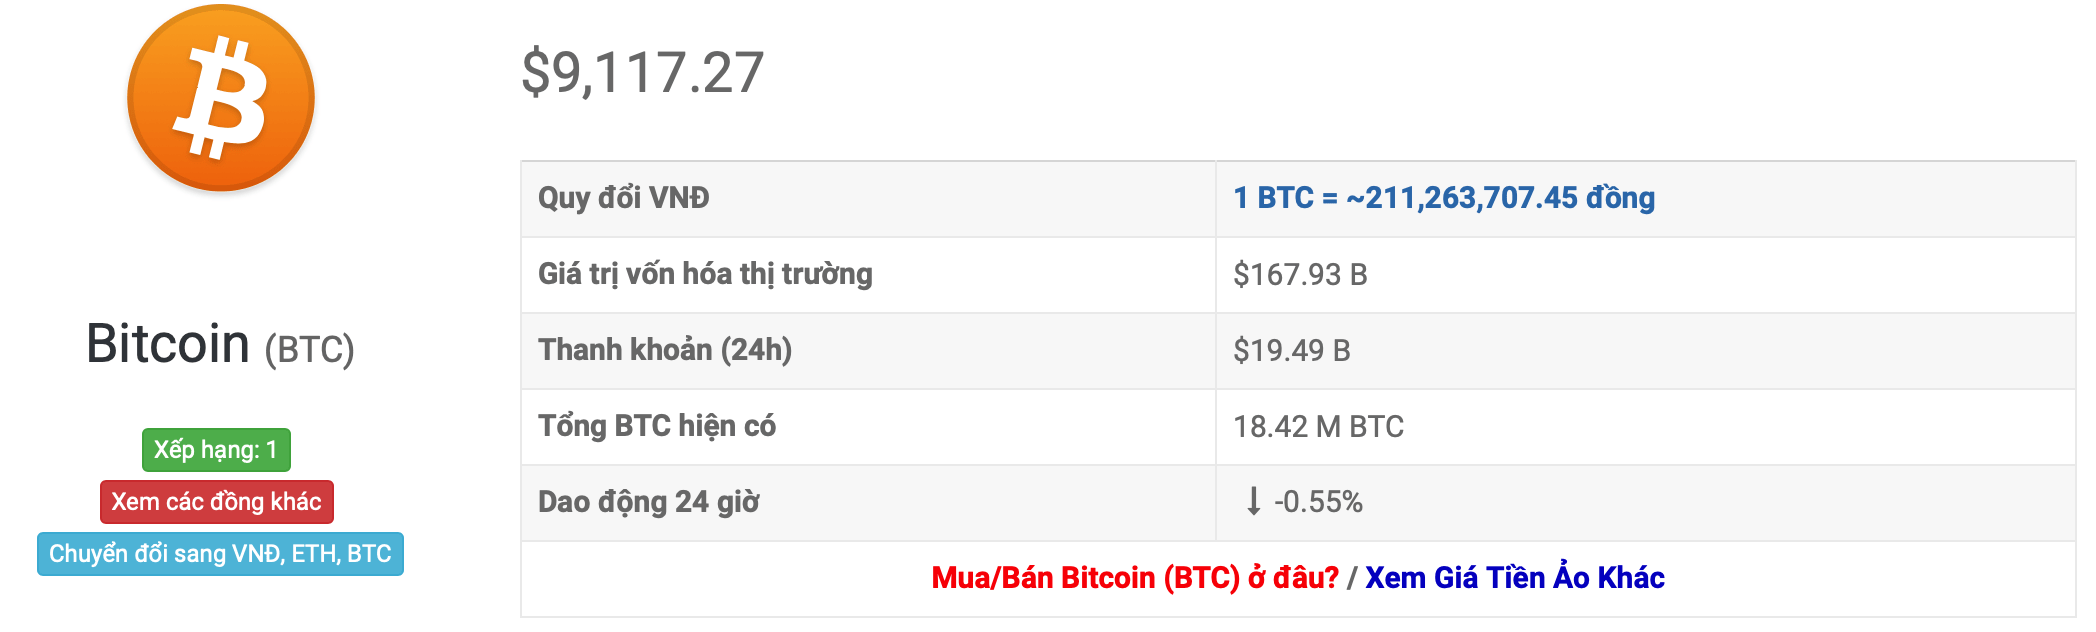 giá bitcoin 24 giờ